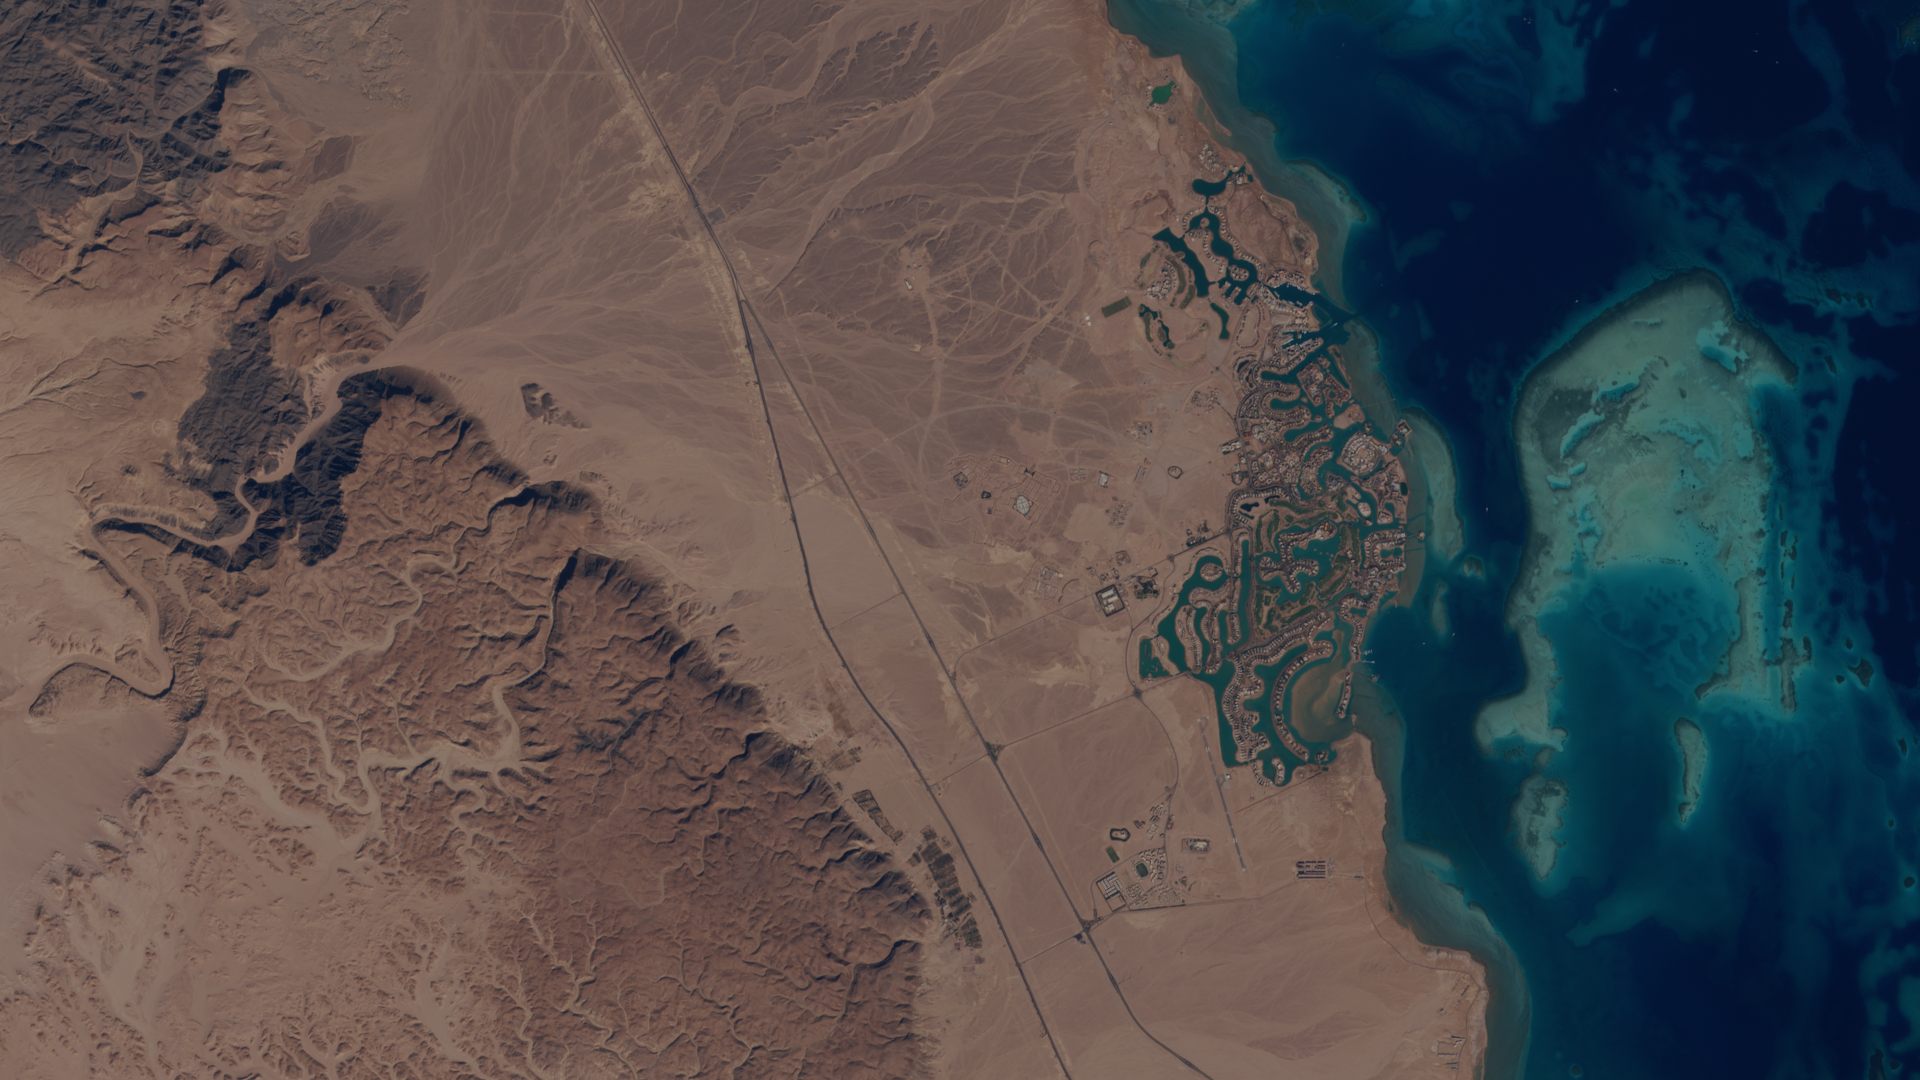 Mer rouge - Egypte - Tourisme - Golf - El Gouna - Satellite sentinel 2 - MSI - ESA - observation de la Terre